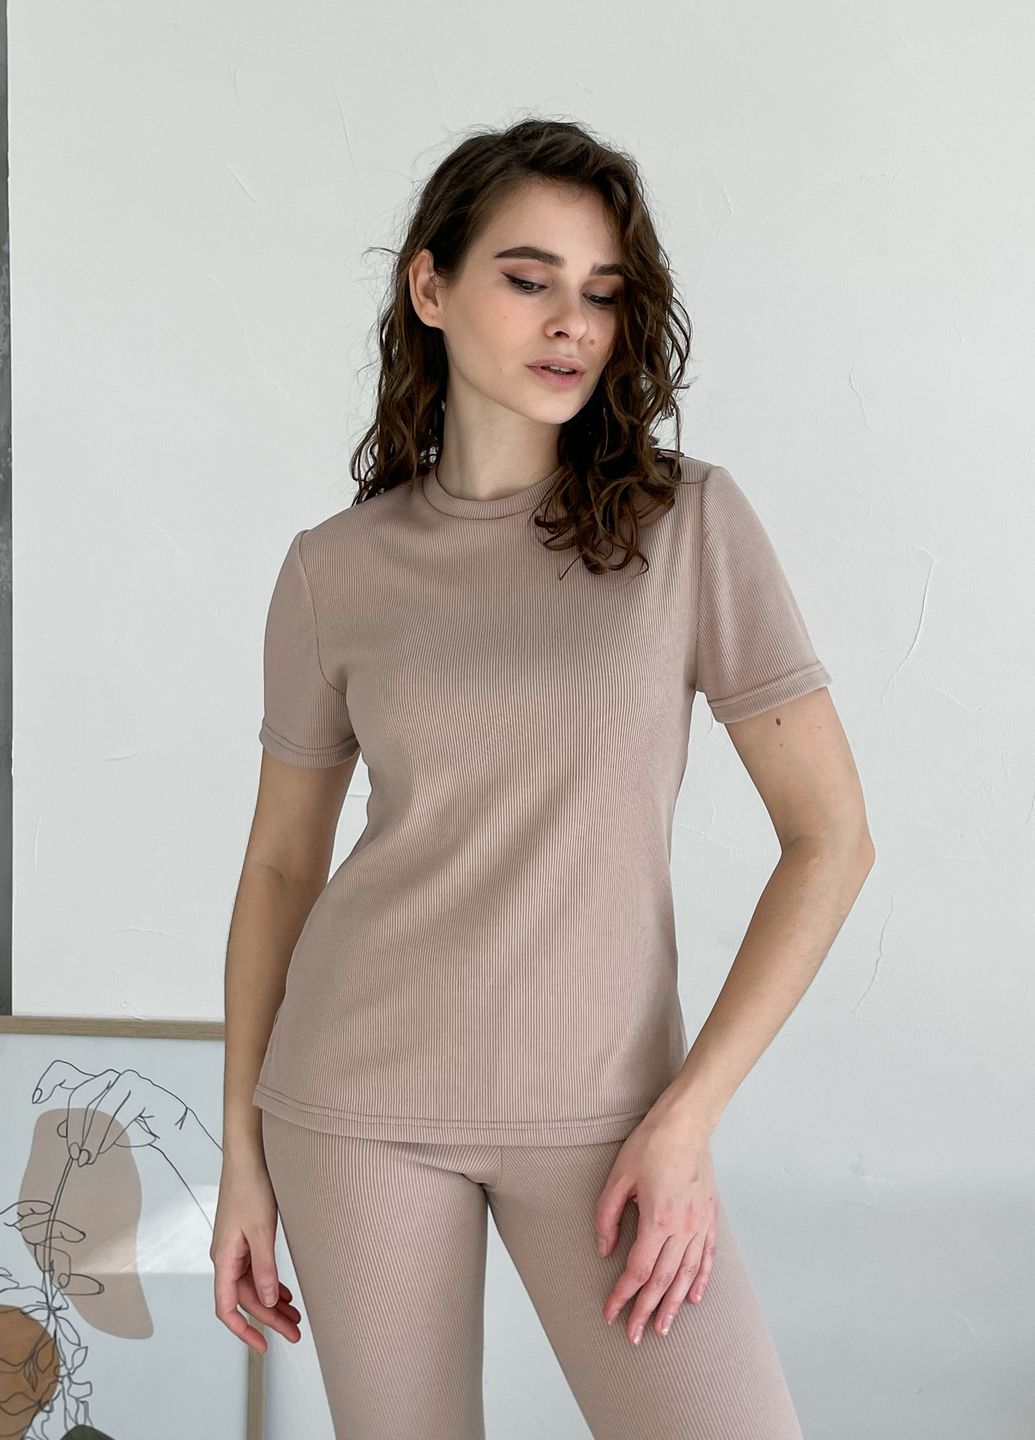 Купить Костюм женский в рубчик футболка с лосинами бежевый Merlini Сантино 100000503, размер XS-M (40-44) в интернет-магазине